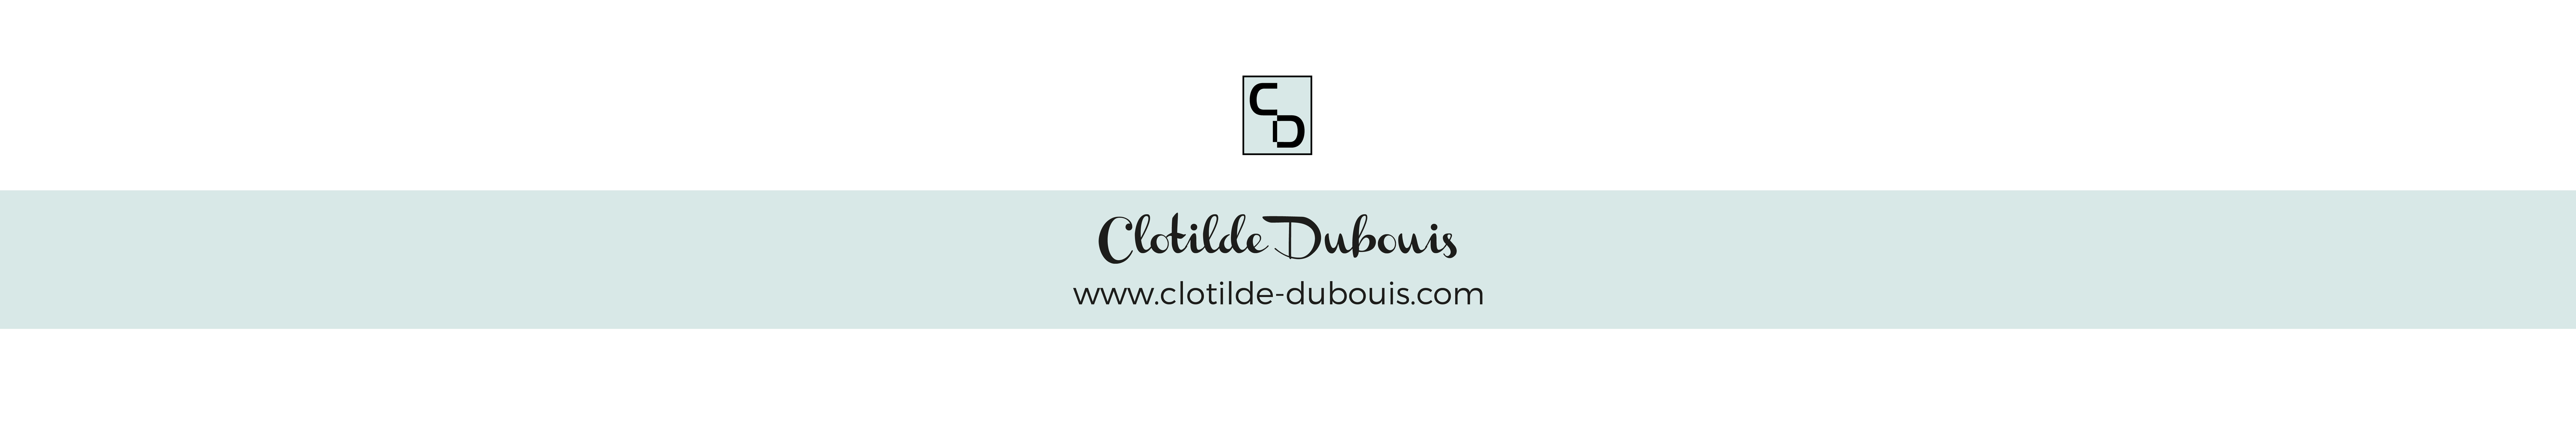 Clotilde Dubouis's profile banner